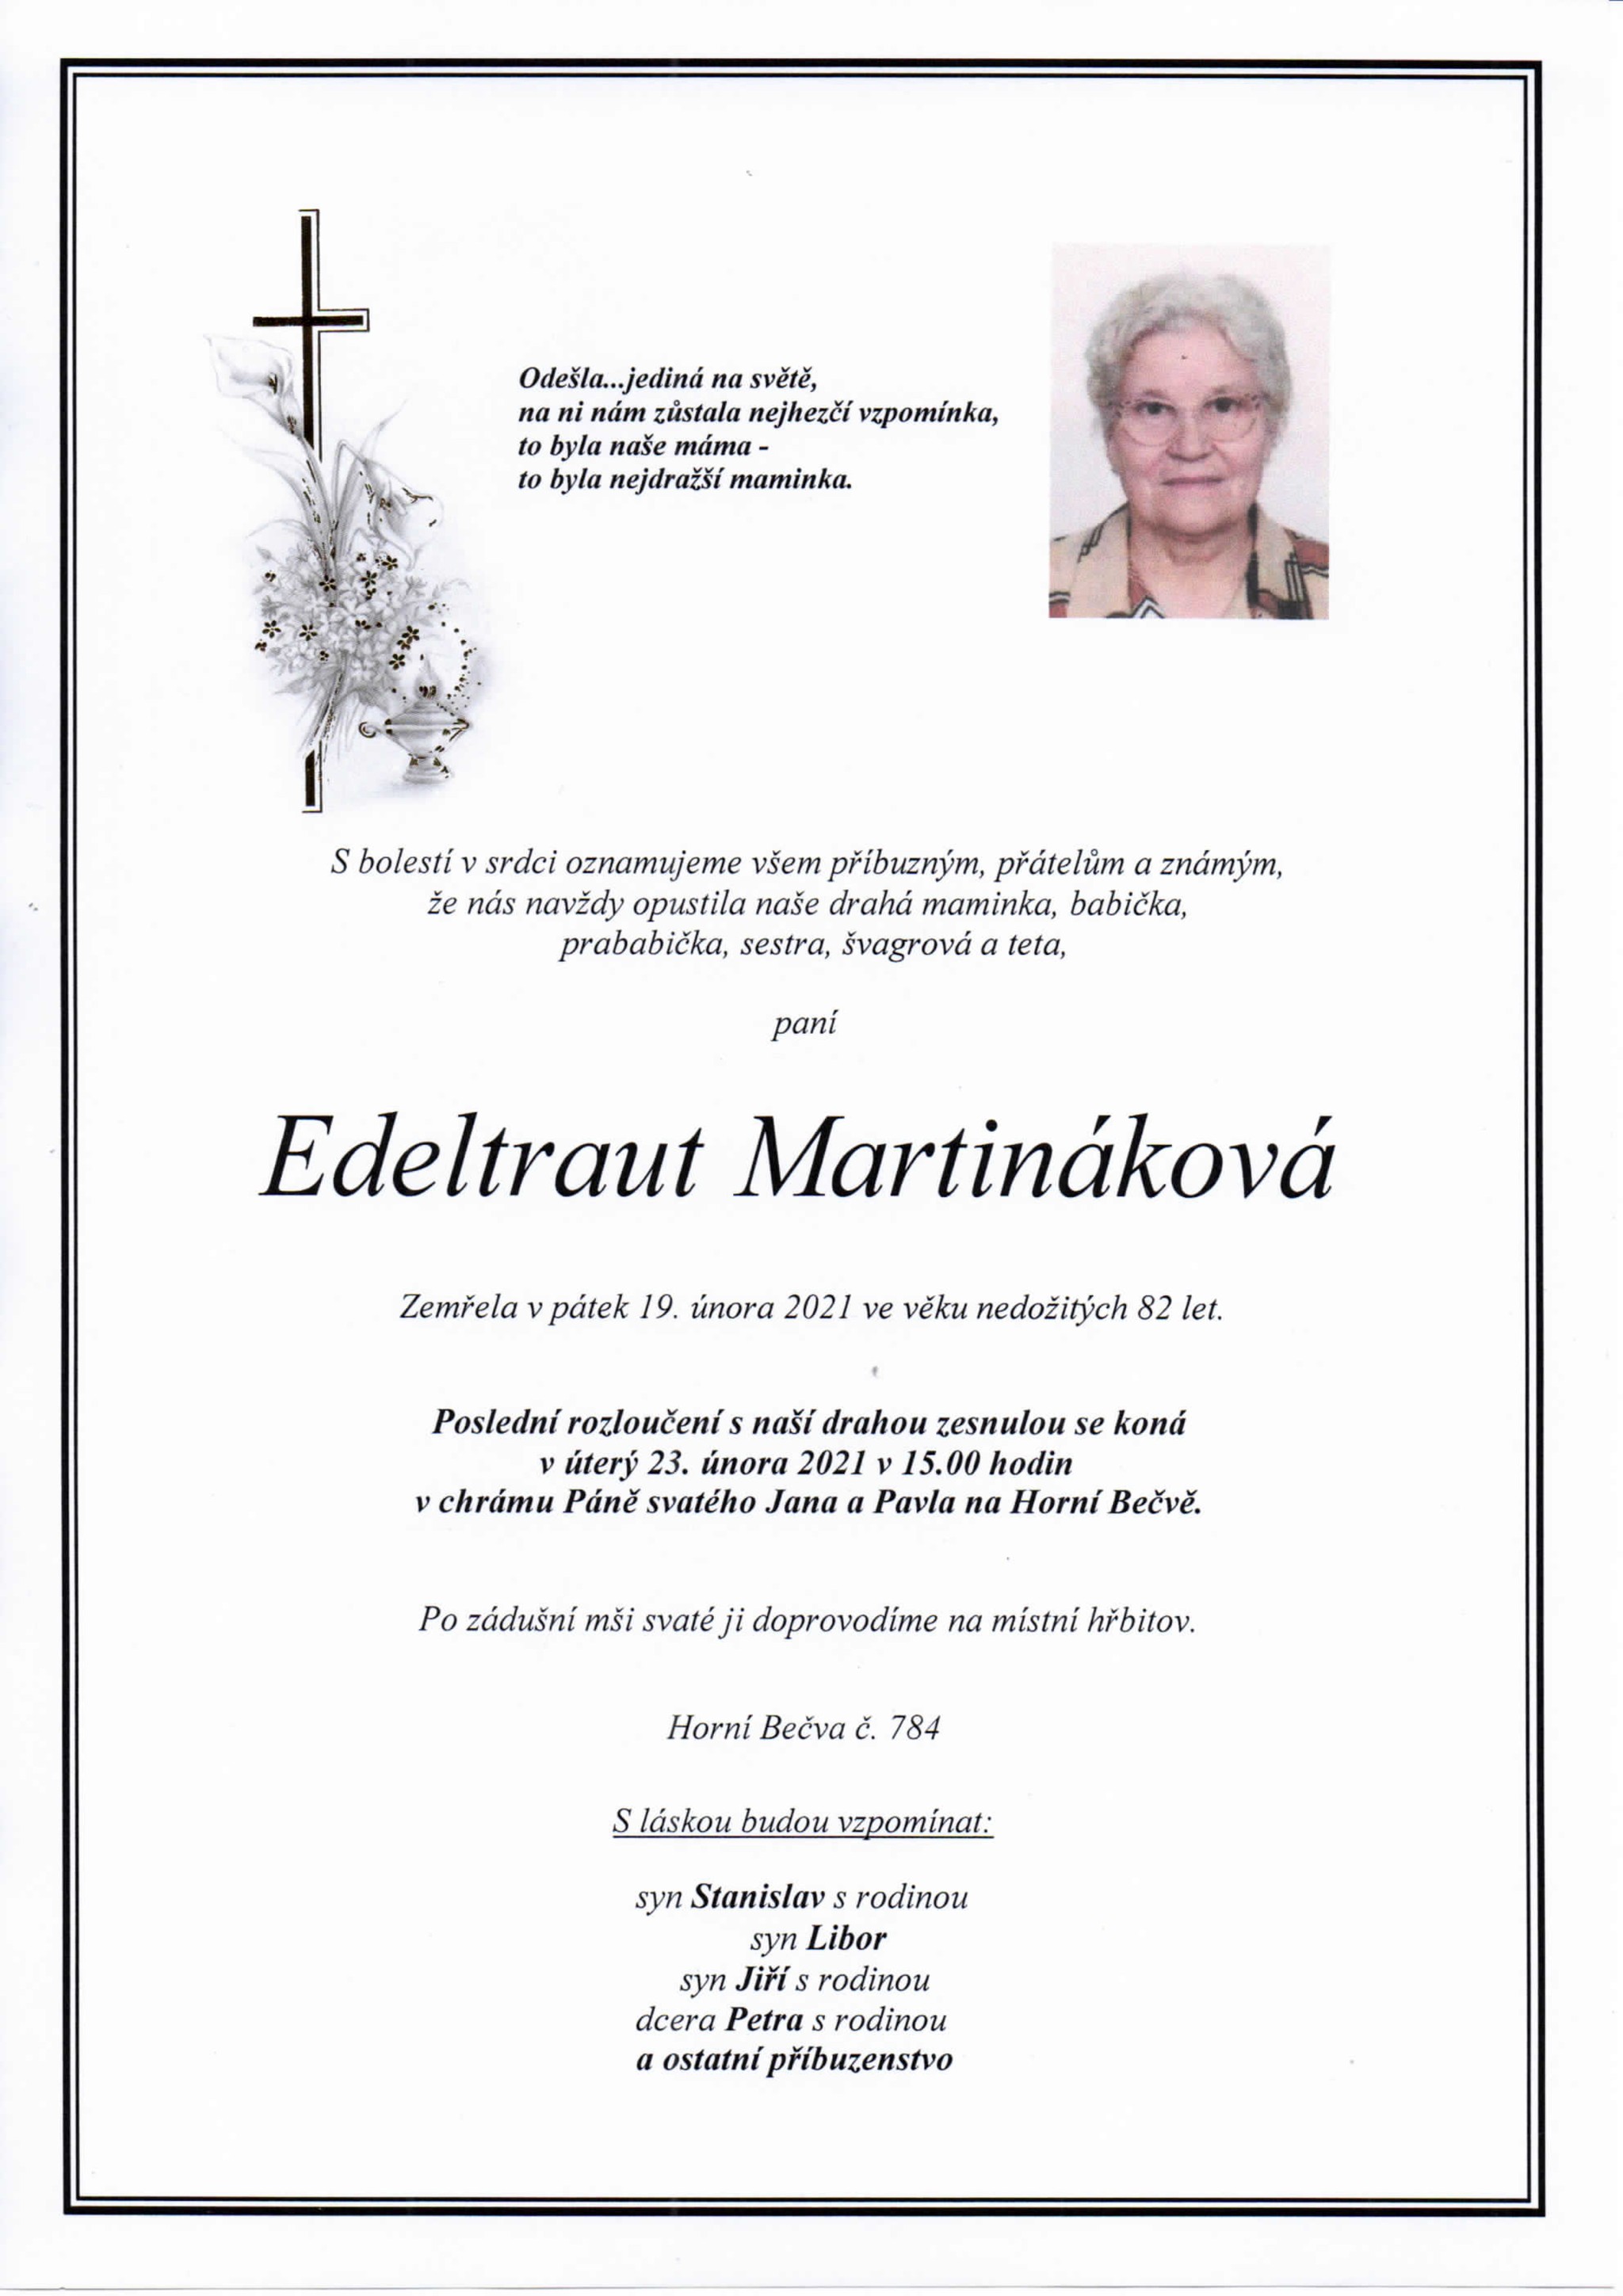 Edeltraut Martináková